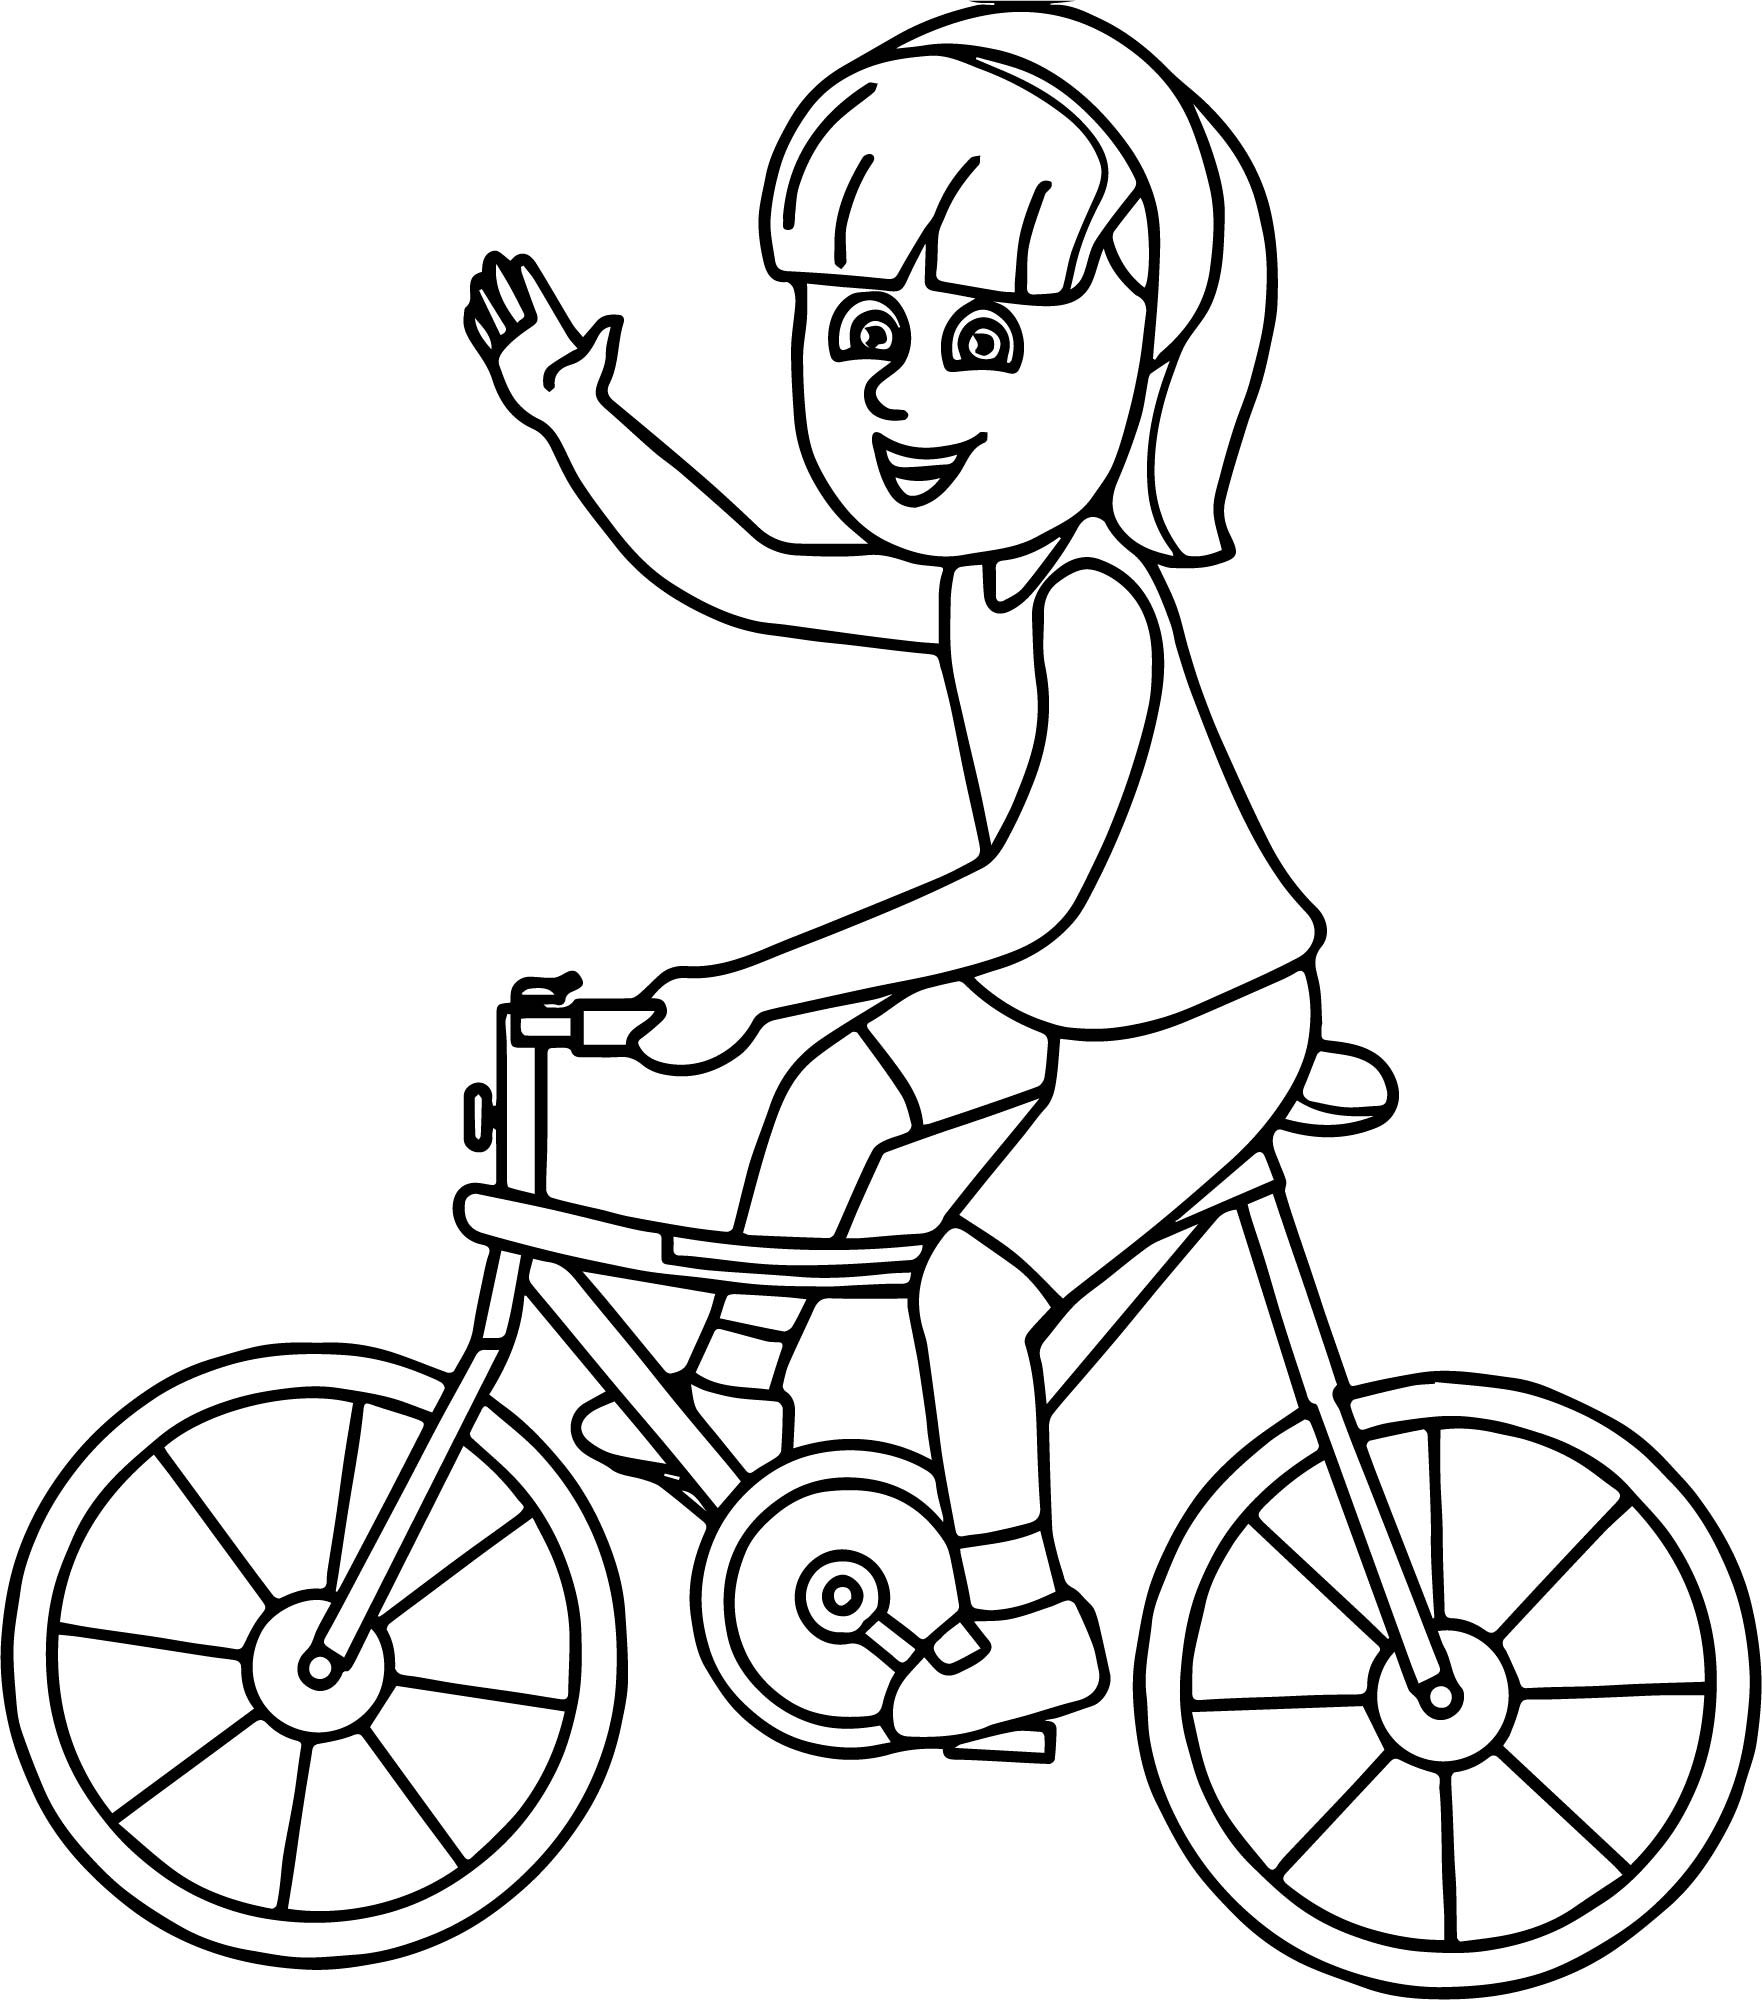 Велосипед раскраска для детей